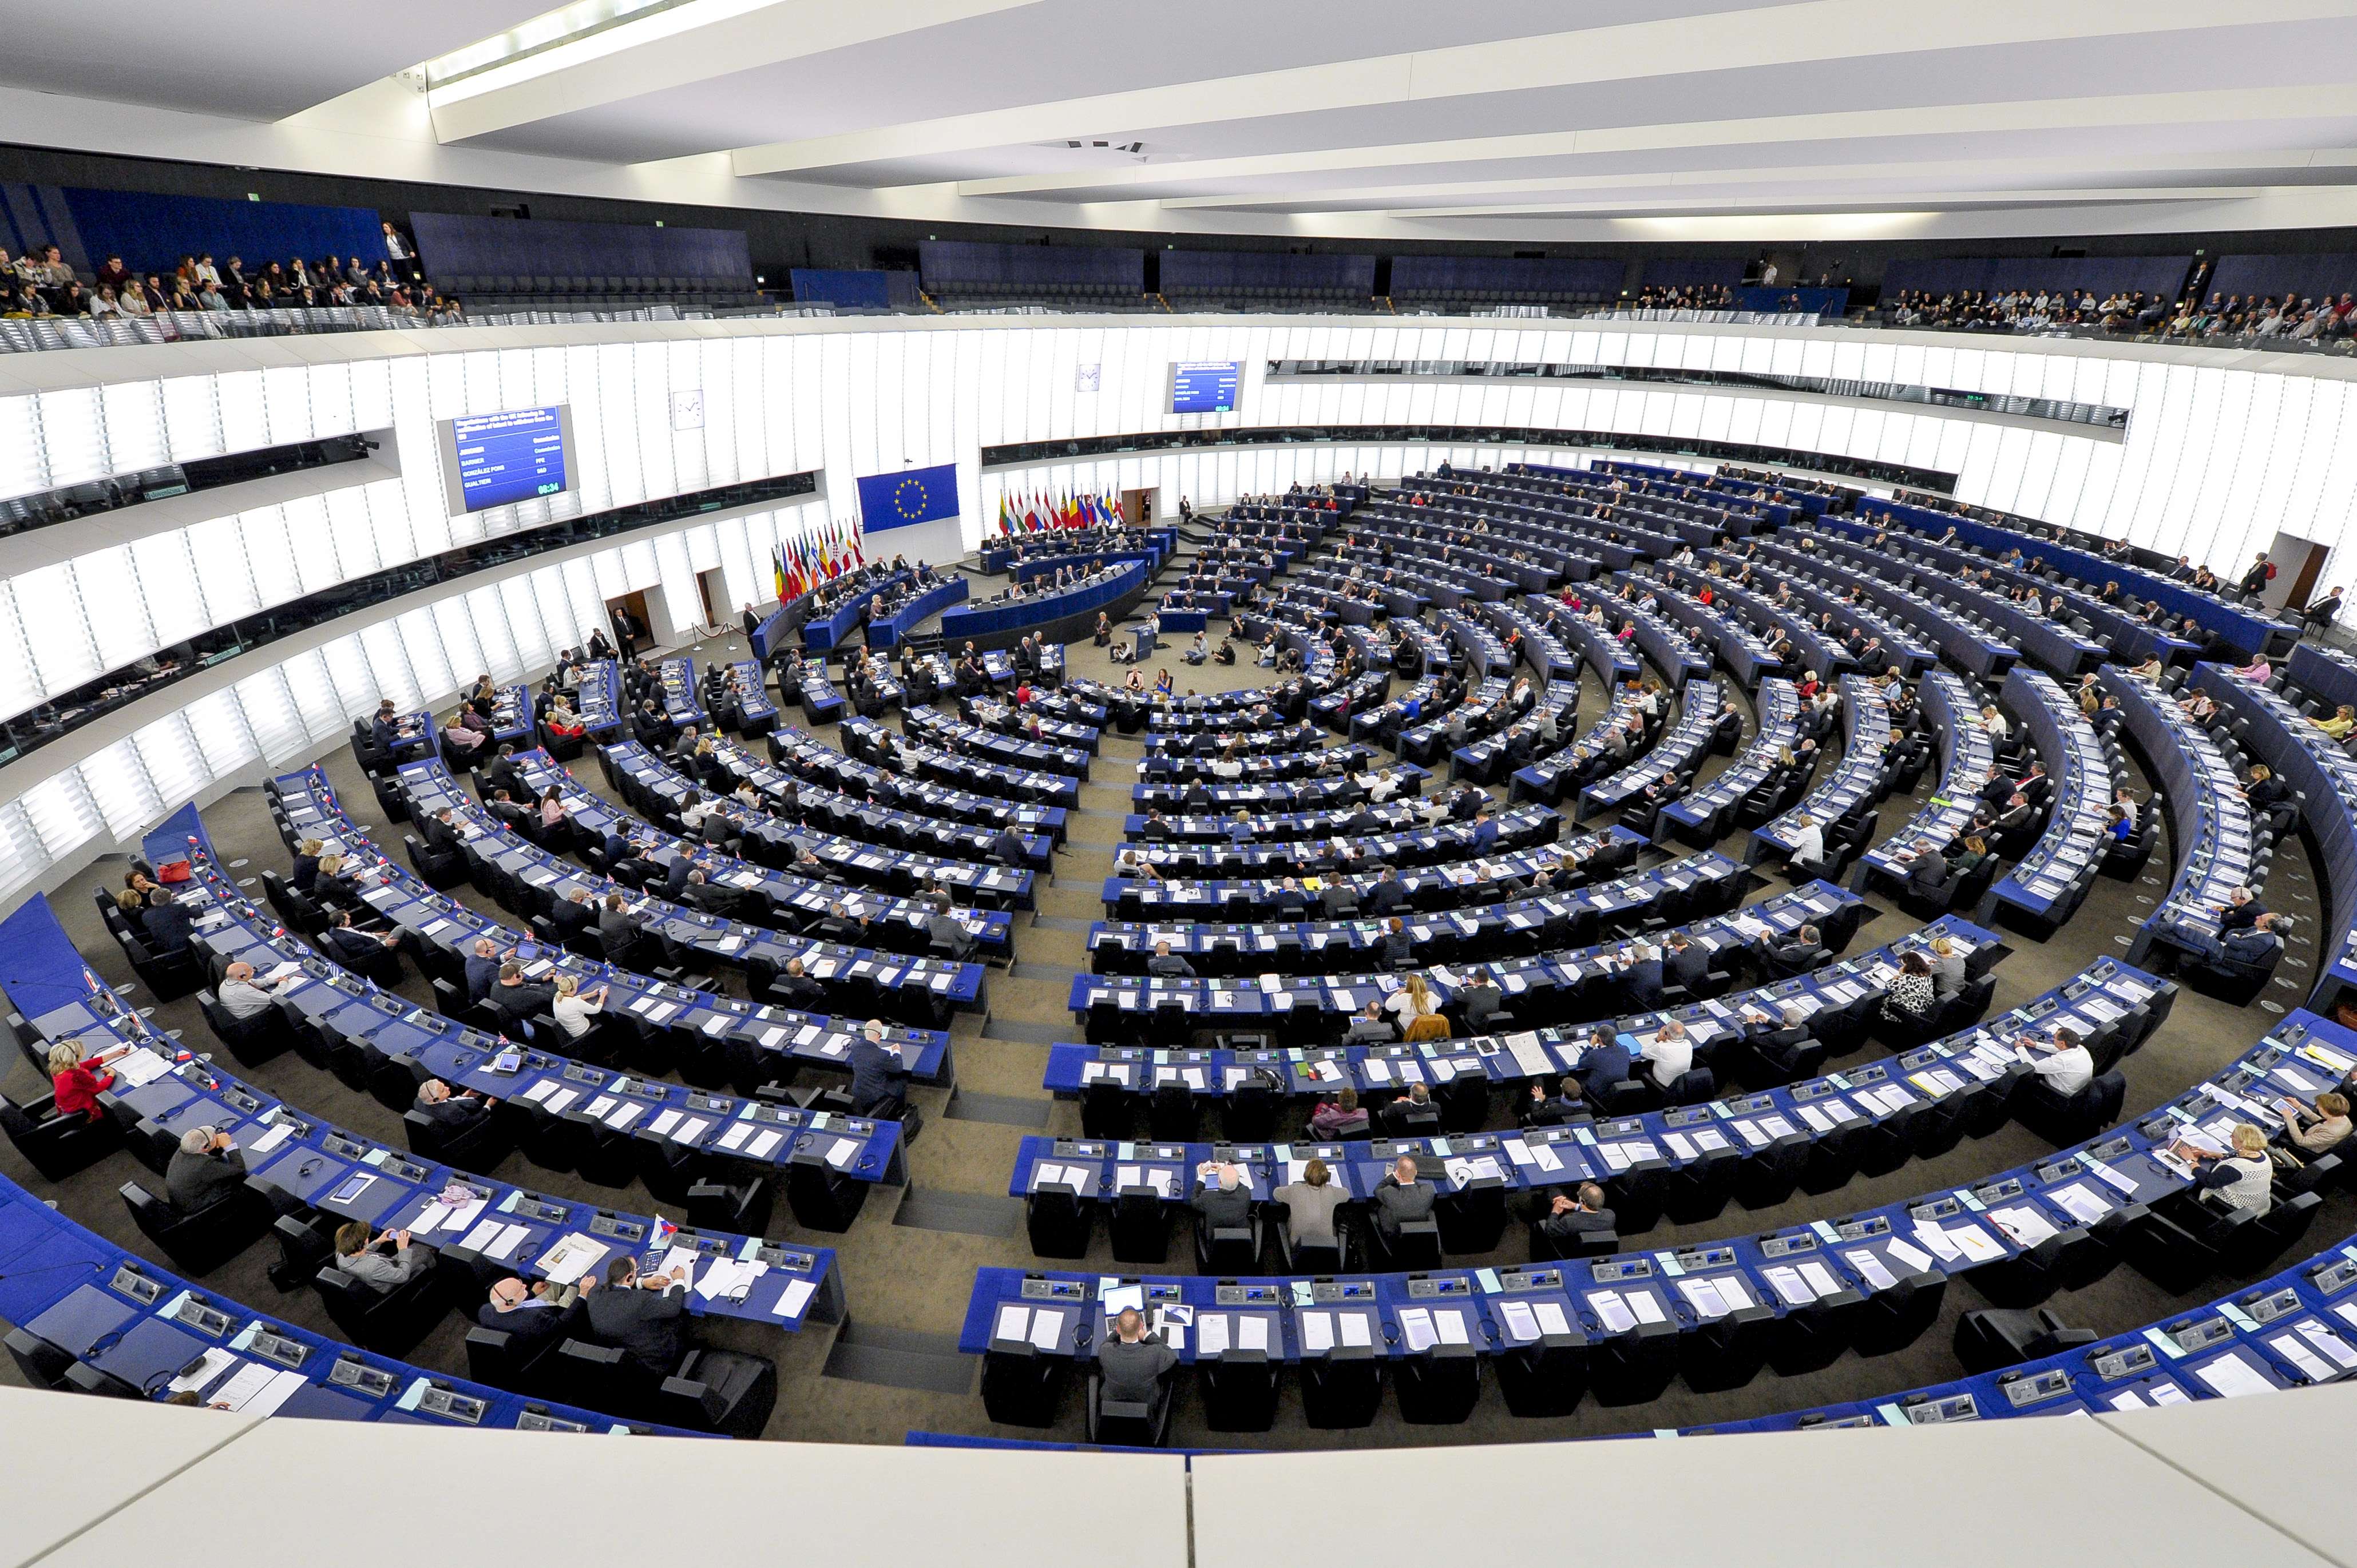 Ευρωεκλογές: Κεντροδεξιά και Κεντροαριστερά χάνουν έδρες στο ευρωκοινοβούλιο- Άνοδος της ακροδεξιάς